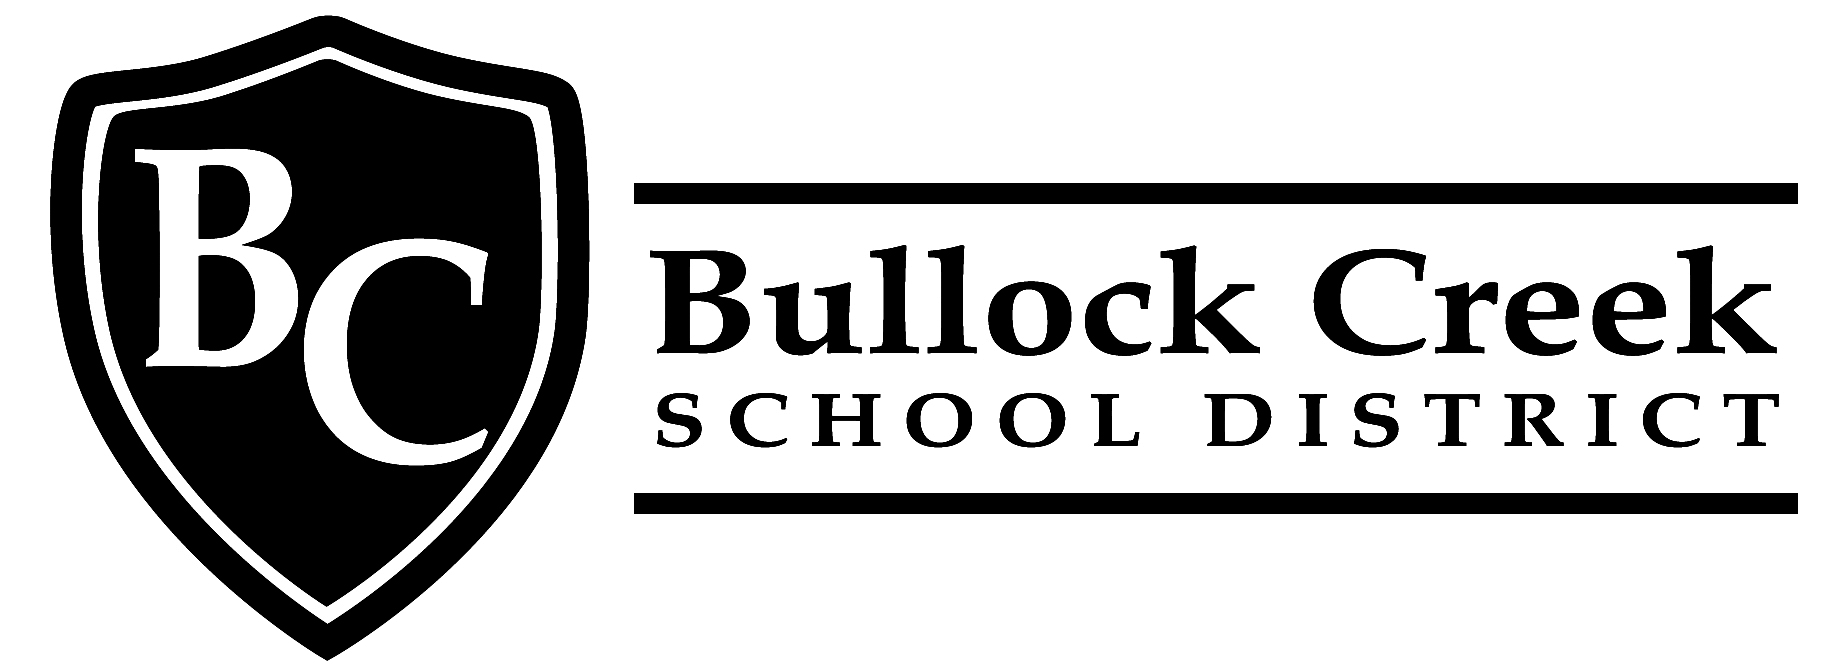 Bullock Creek Schools